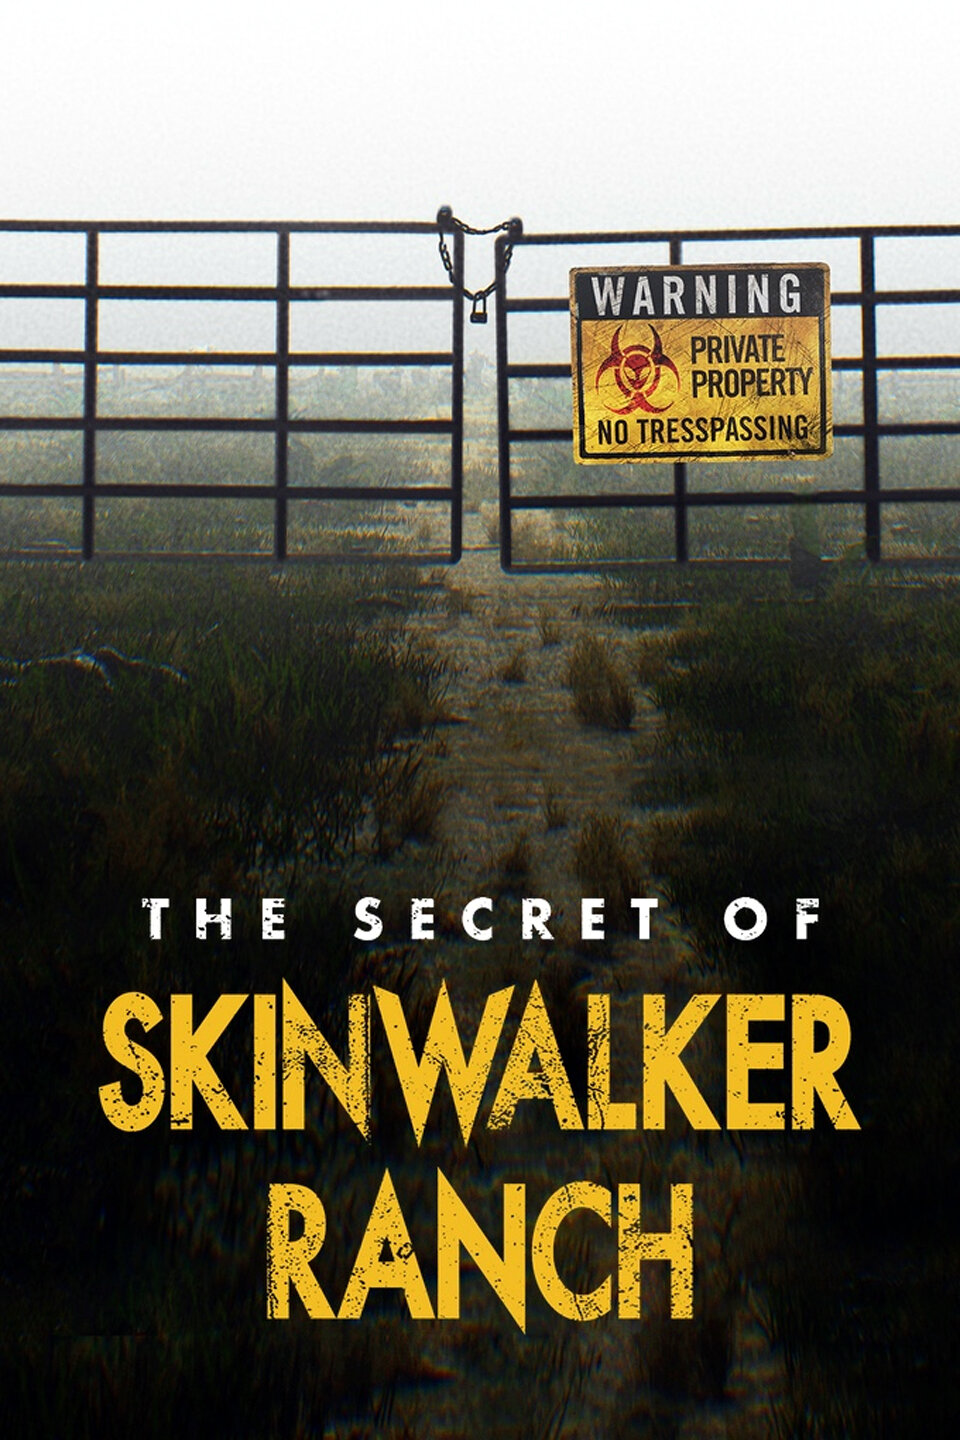 The Secret of Skinwalker Ranch Image 801410 TVmaze